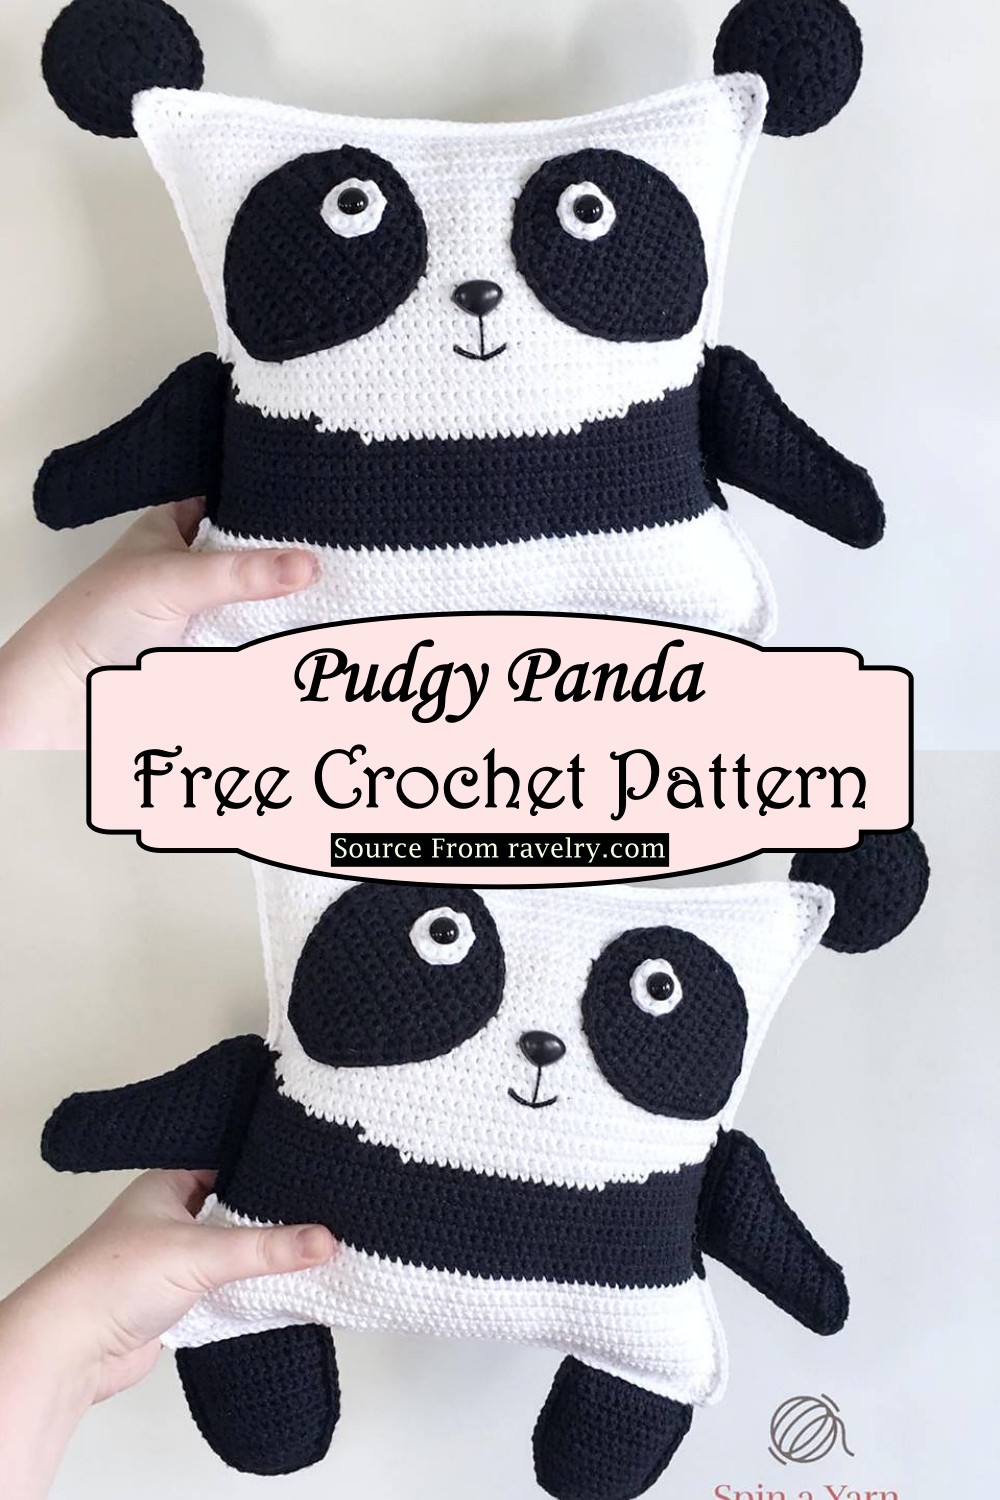 Crochet Pudgy Panda Pattern